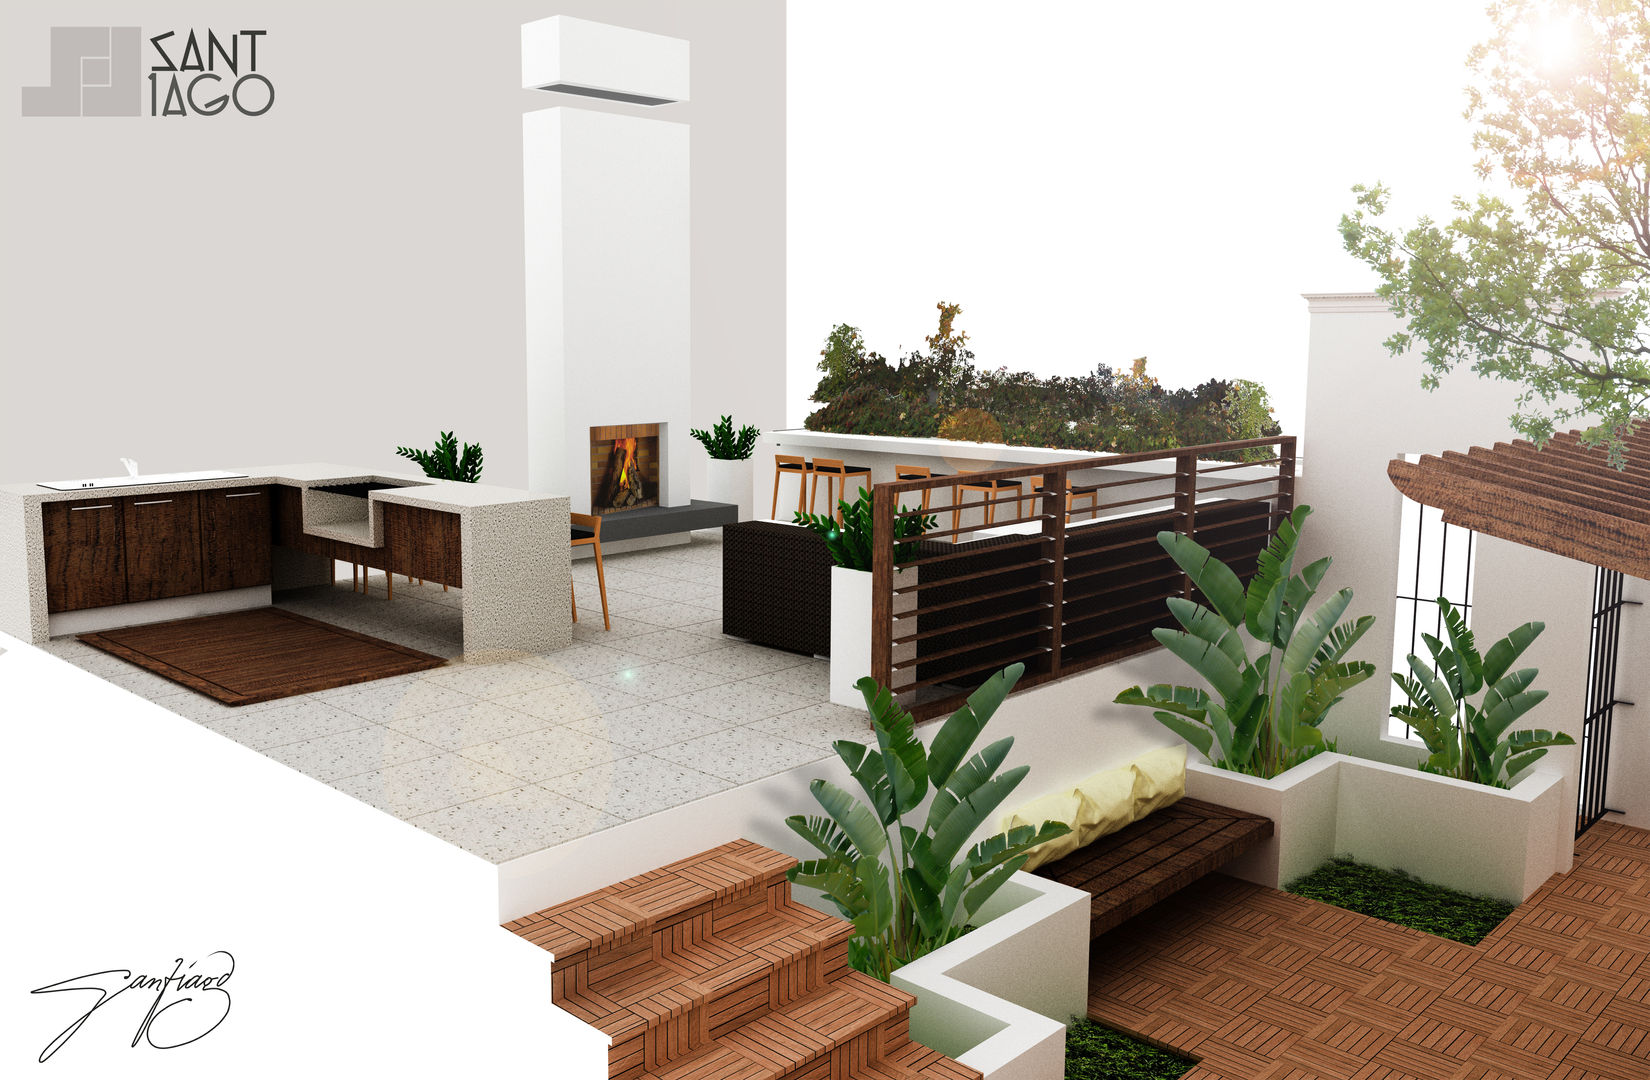 Proyecto RR, SANT1AGO arquitectura y diseño SANT1AGO arquitectura y diseño Varandas, marquises e terraços minimalistas